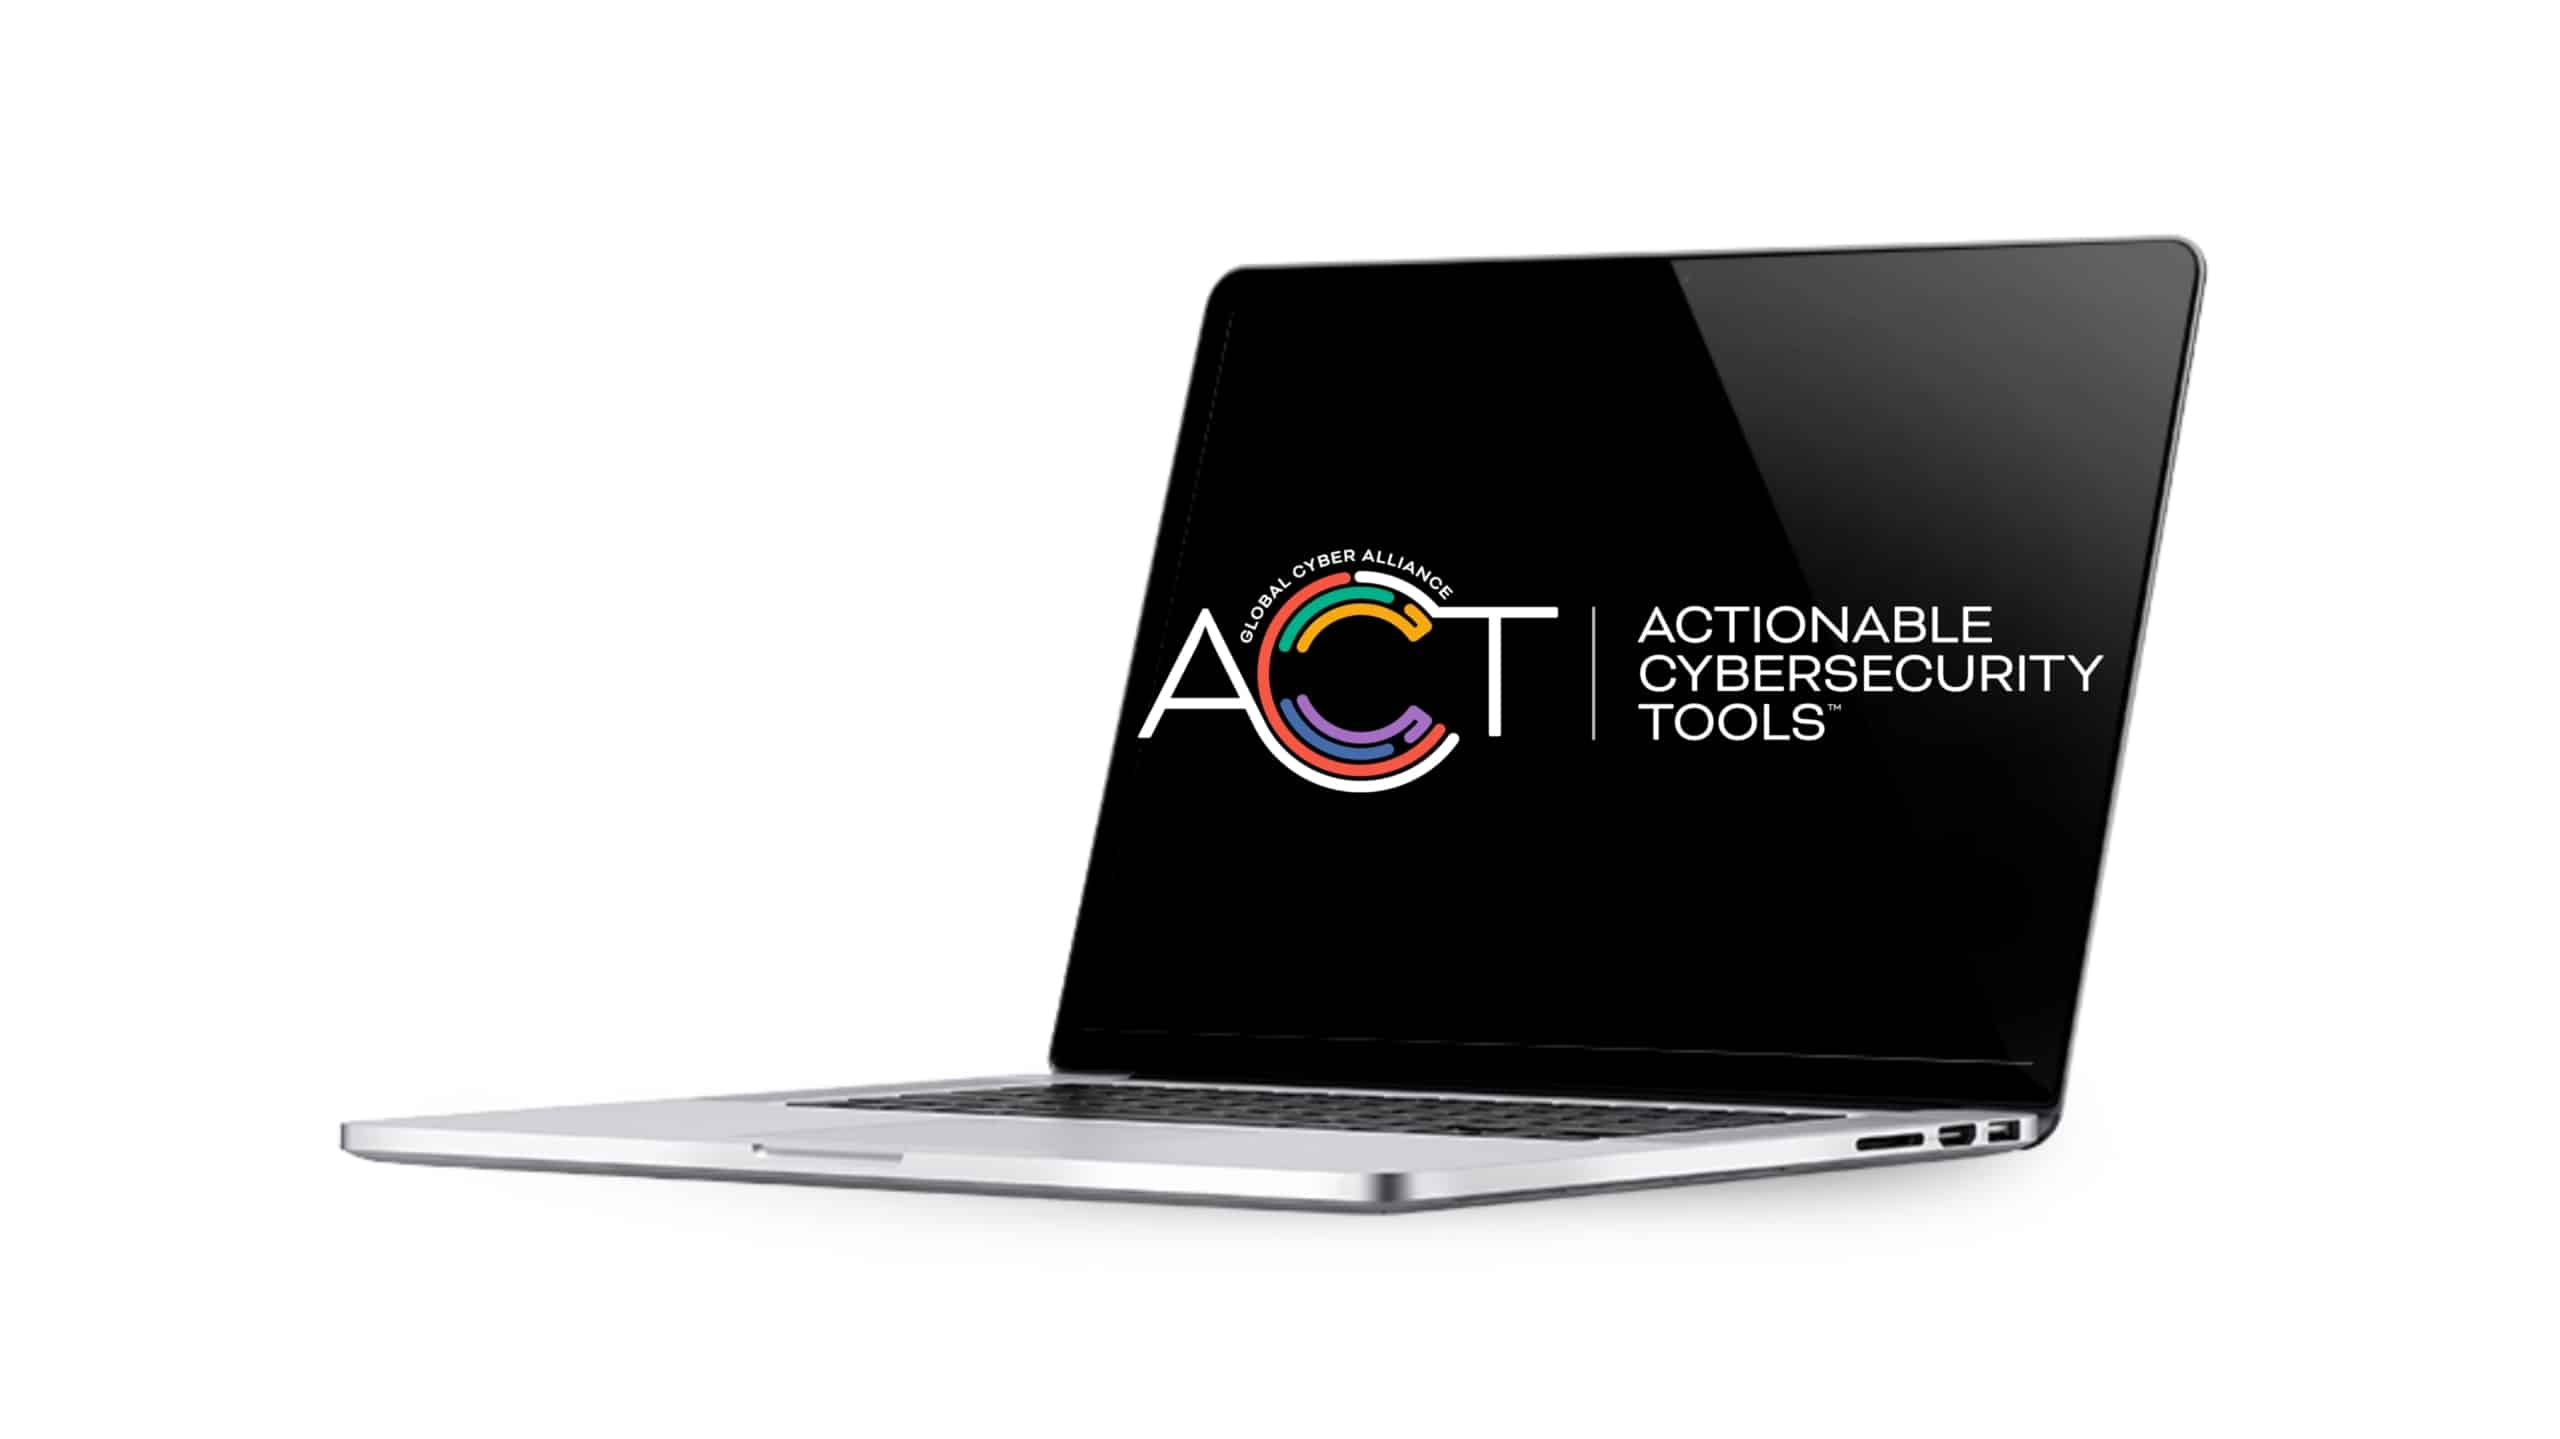 ACT logo on laptop